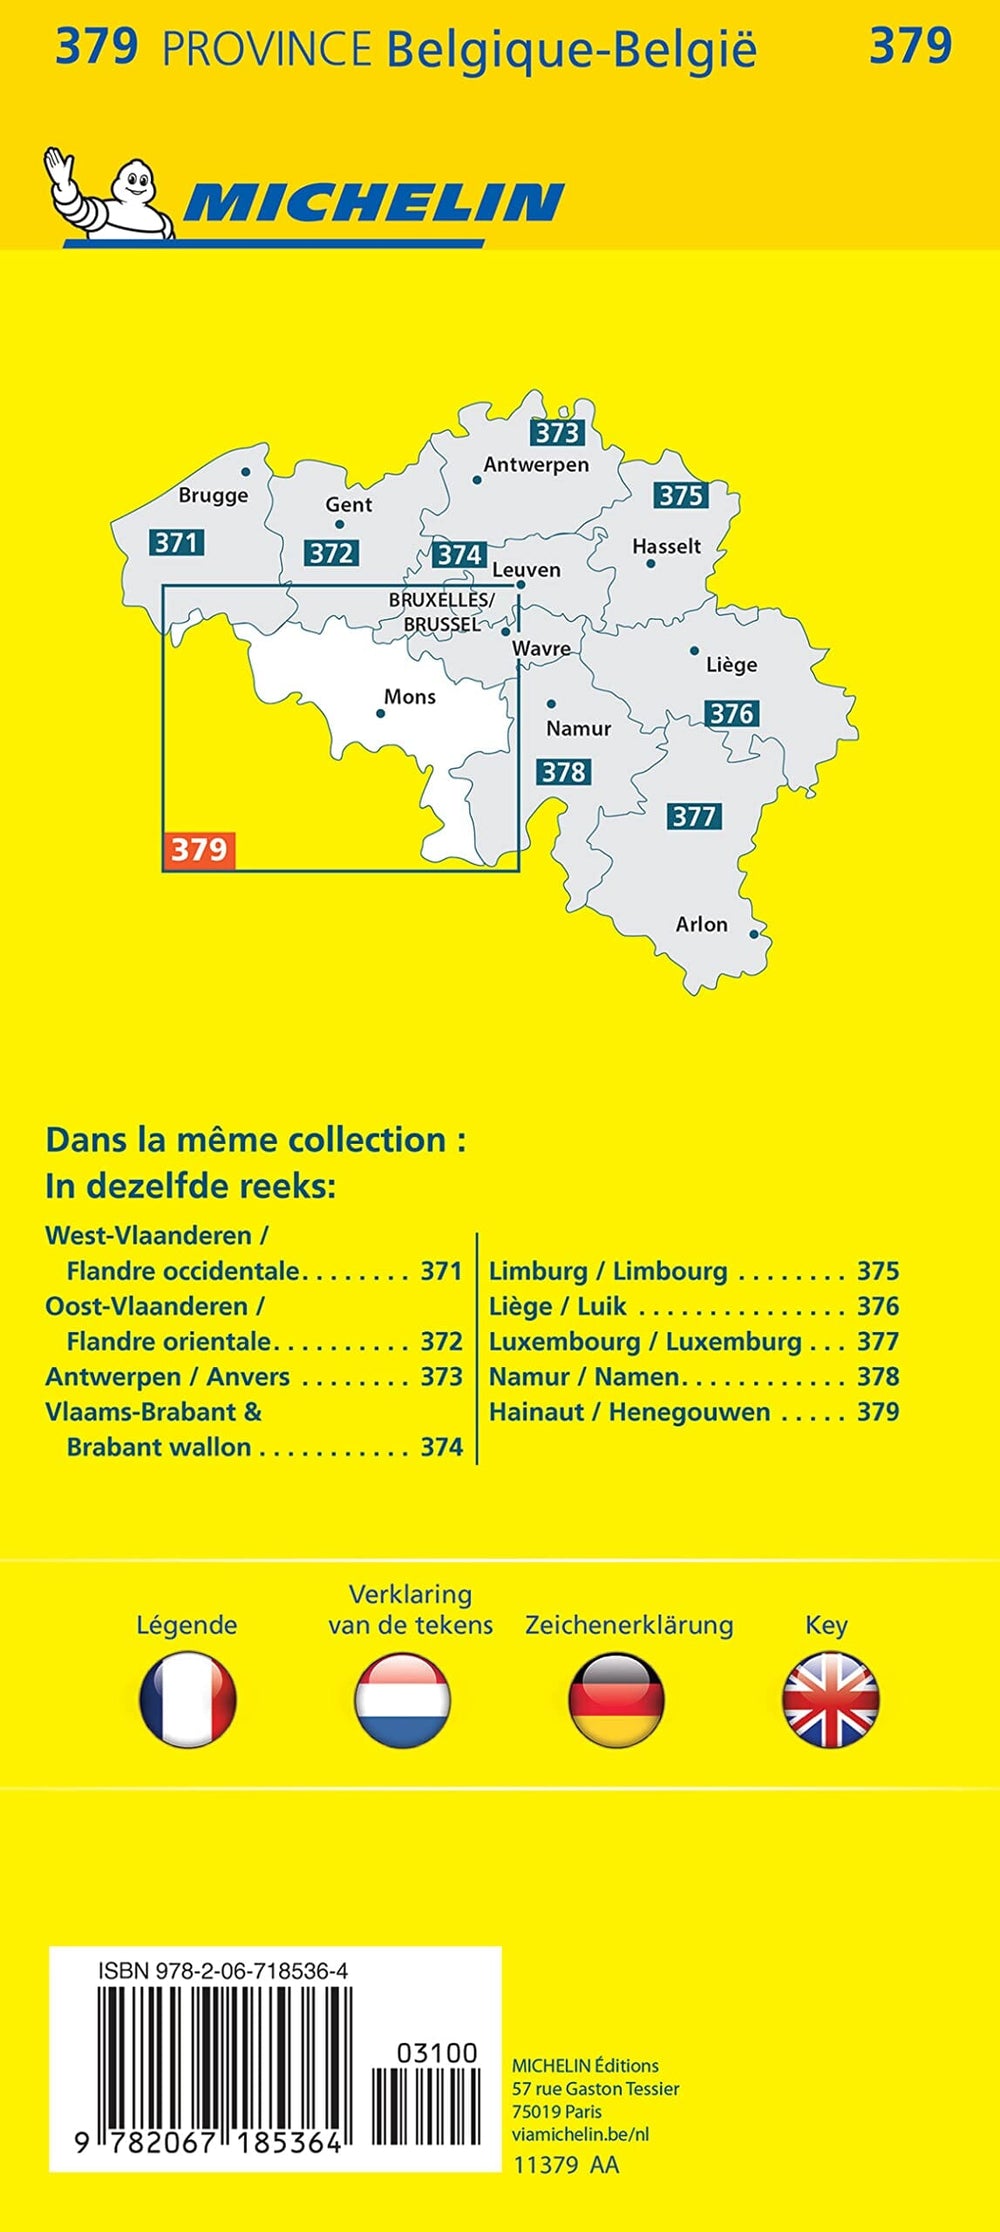 Carte routière n° 379 - Hainaut | Michelin carte pliée Michelin 